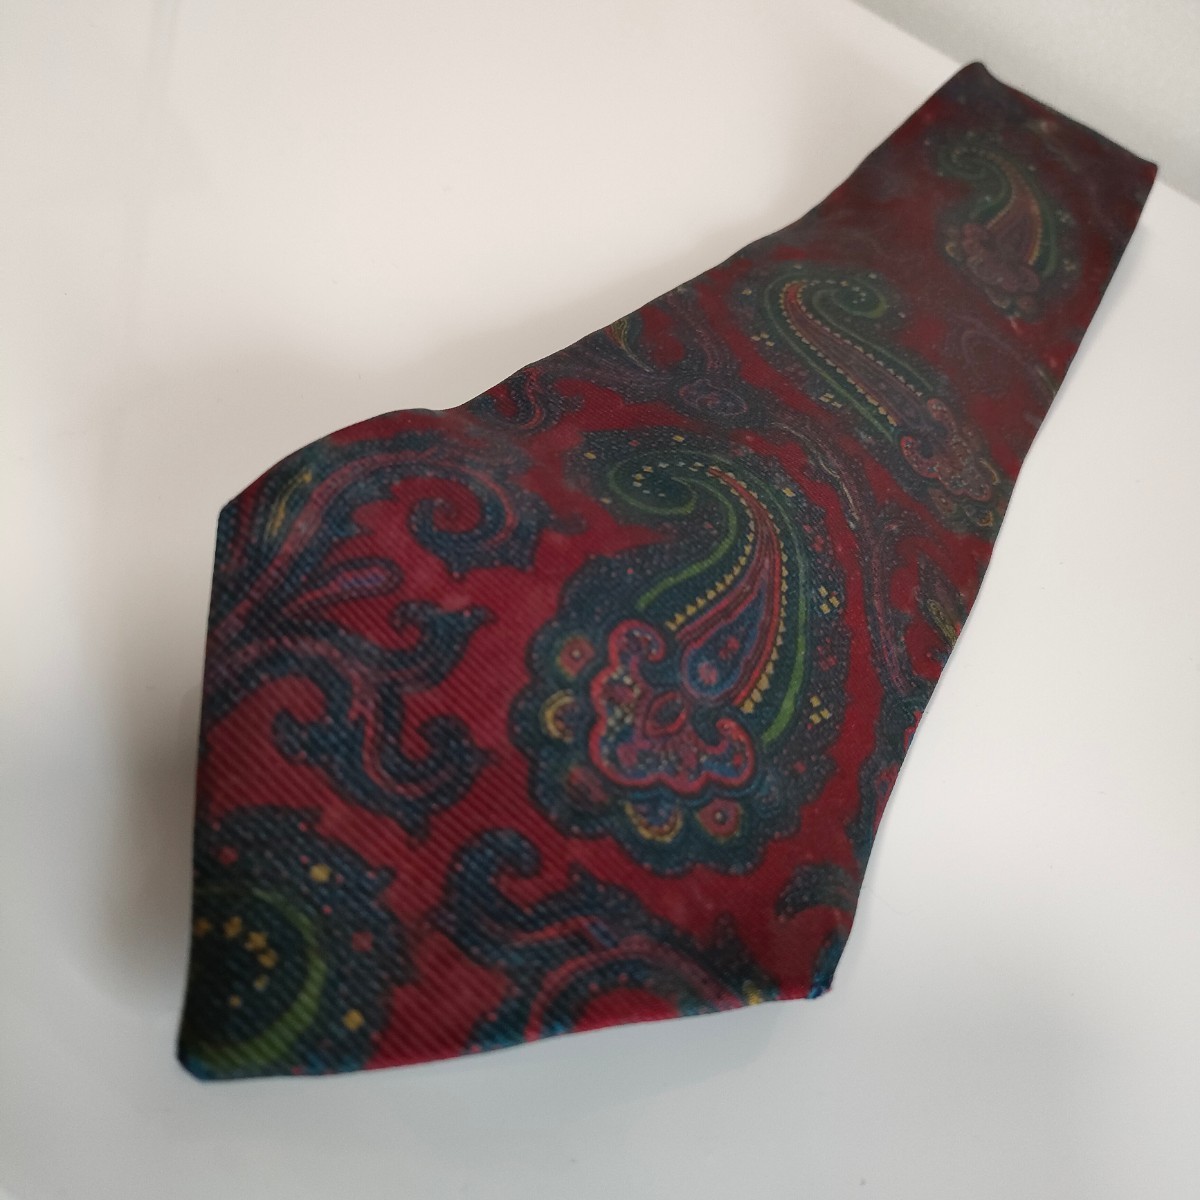 Ralph Lauren( Ralph Lauren ) necktie 8